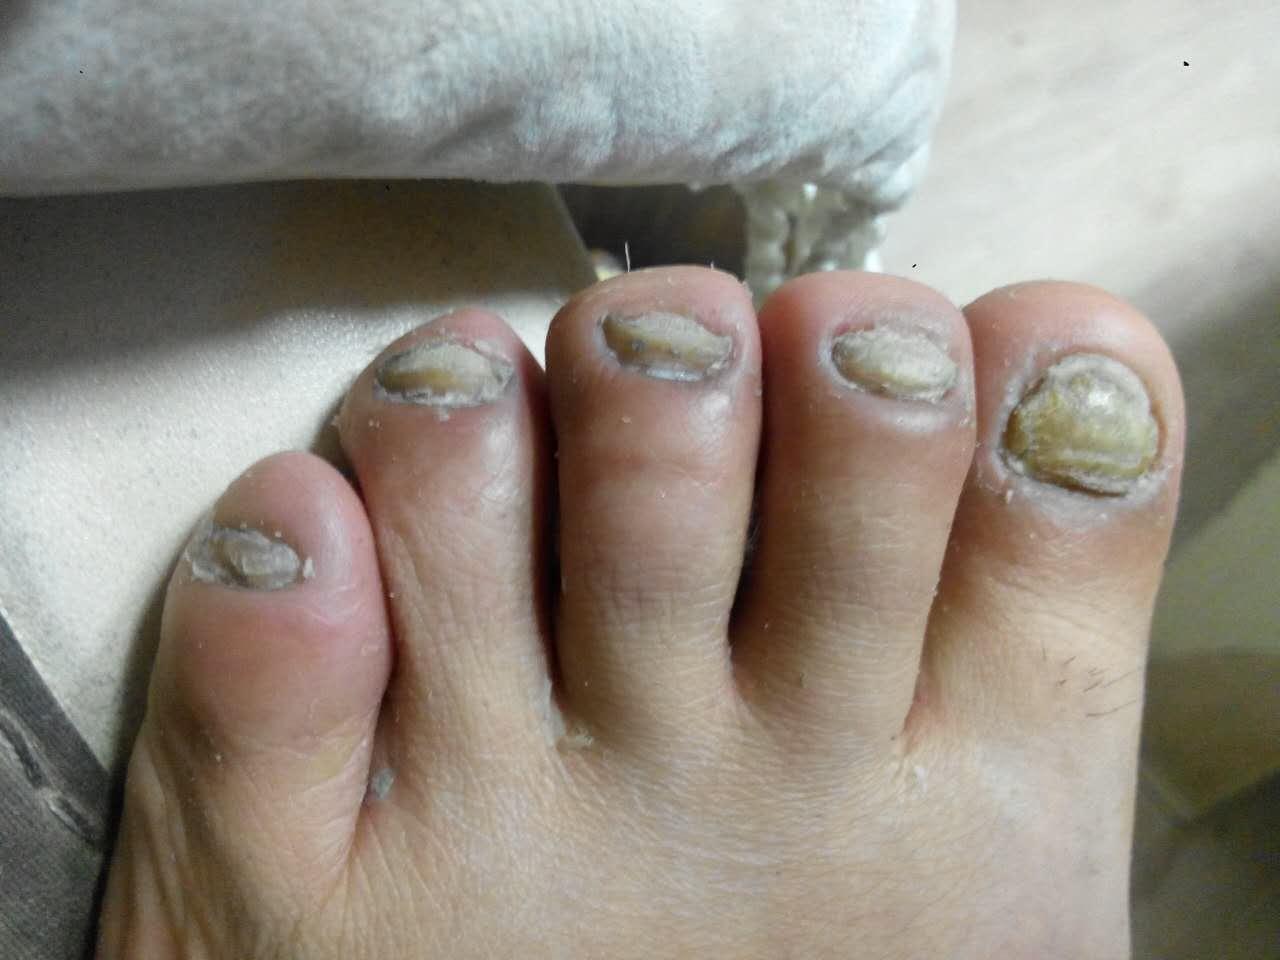 灰指甲治疗四十天了每天用大蒜醋泡脚每天用亮甲隔一天修指甲上药现在